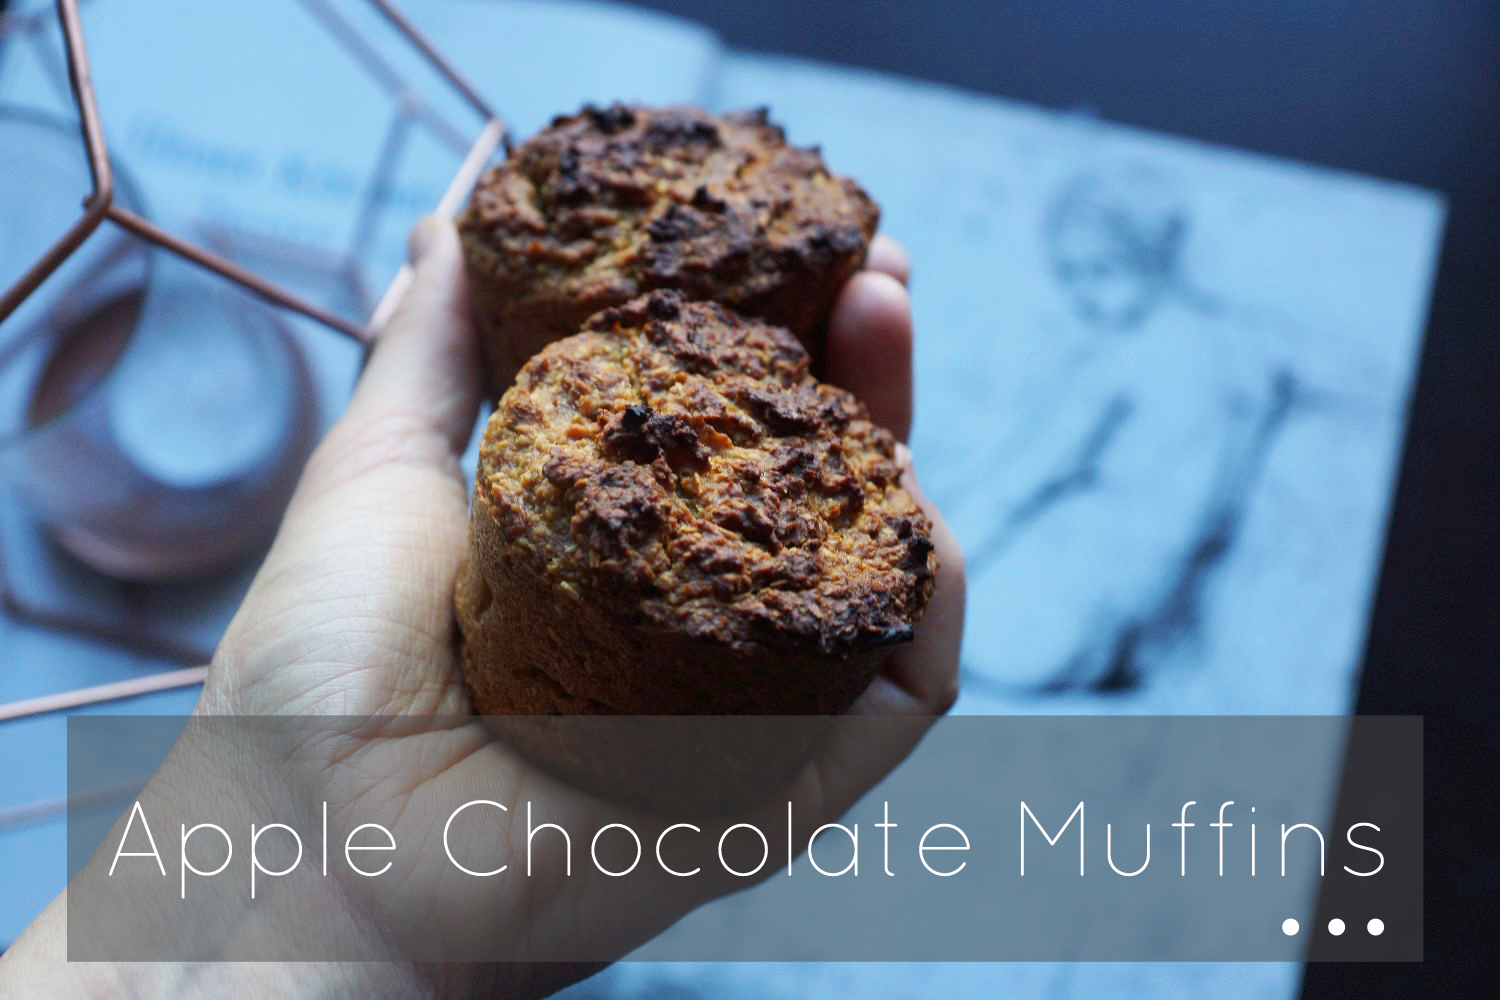 apple muffins with a chocolate center | apfelmuffins mit schokoladenkern